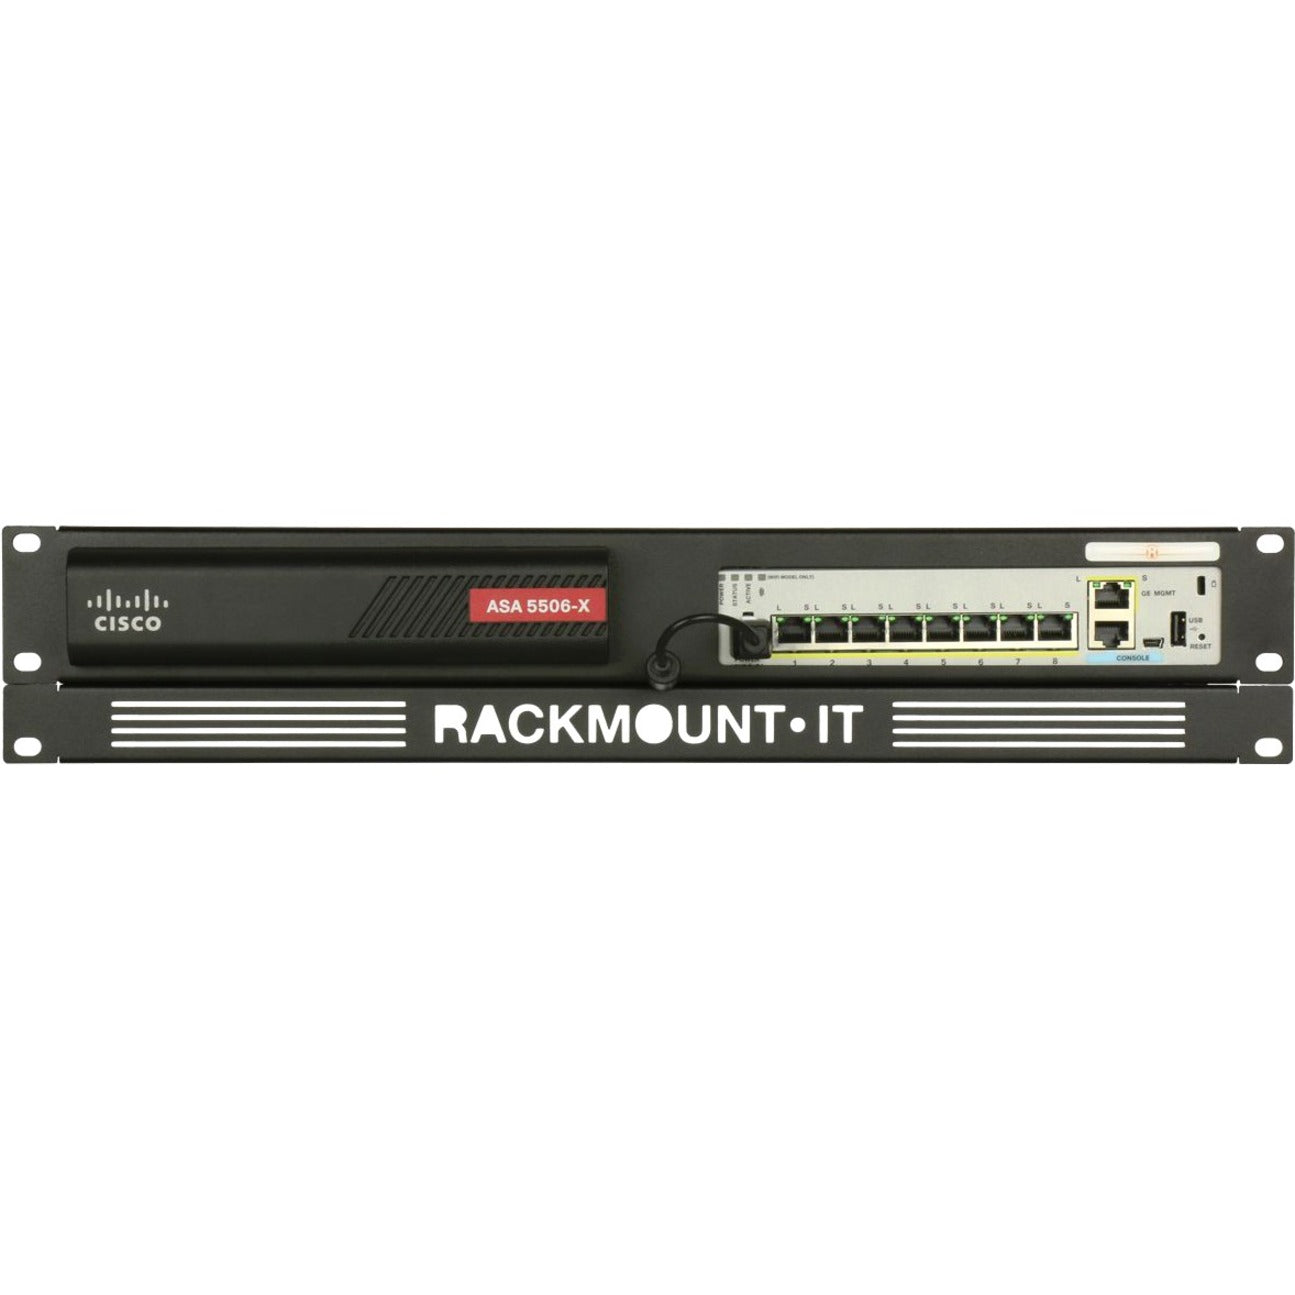 RACKMOUNT.IT RM-CI-T8 Montaje en Rack Cisrack Compatible con Cisco ASA 5506-X y Firepower 1010 Marca: RACKMOUNT.IT Traducción de la marca: MONTAJEENRACK.IT